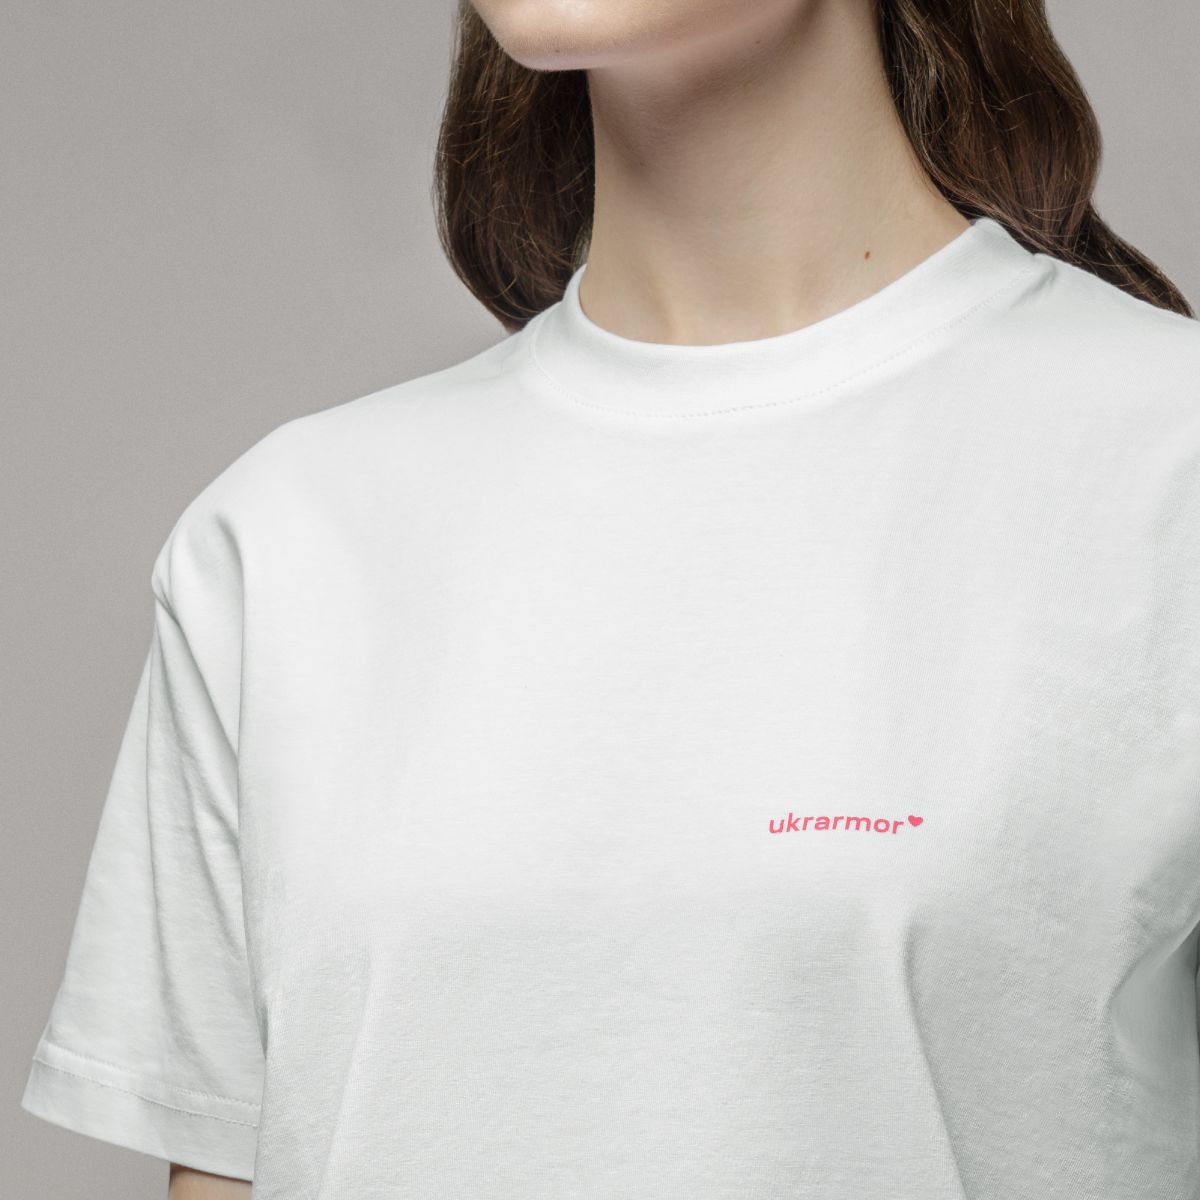 Женская футболка с логотипом Ukrarmor Only for women. Белый 3